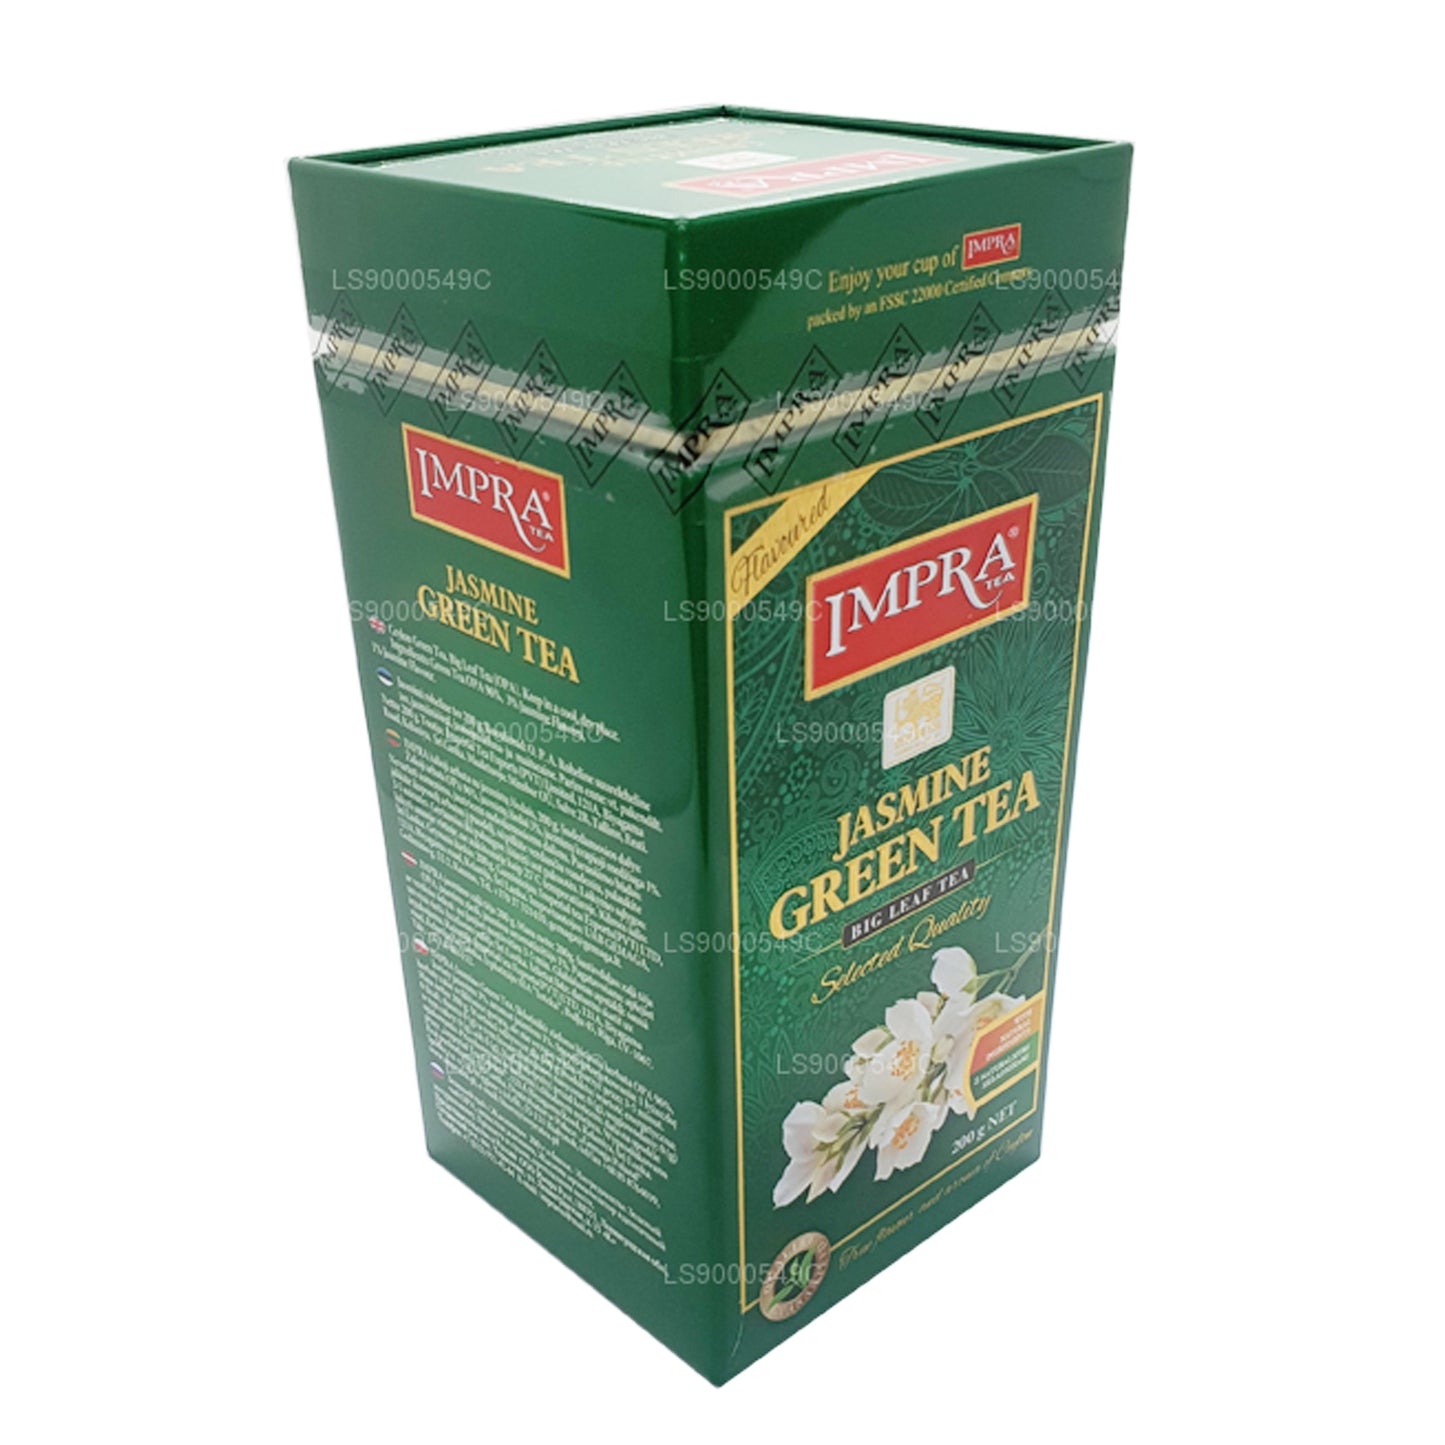 Зеленый чай Impra Жасмин Большой лист (200 г) Мясная кедди